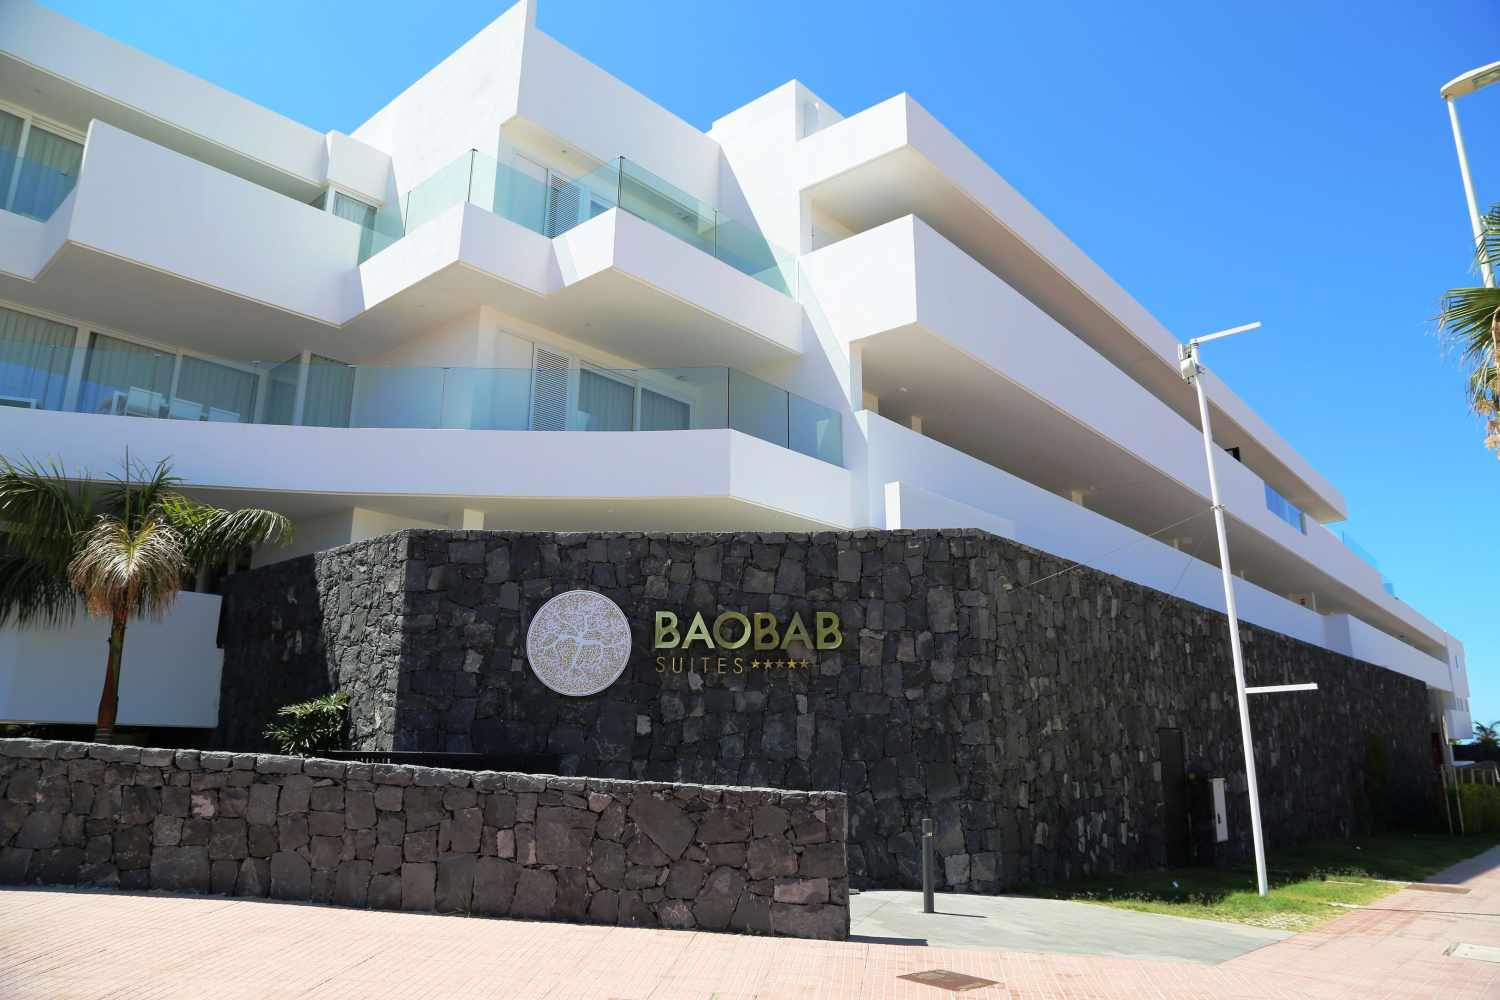 Baobab Suites